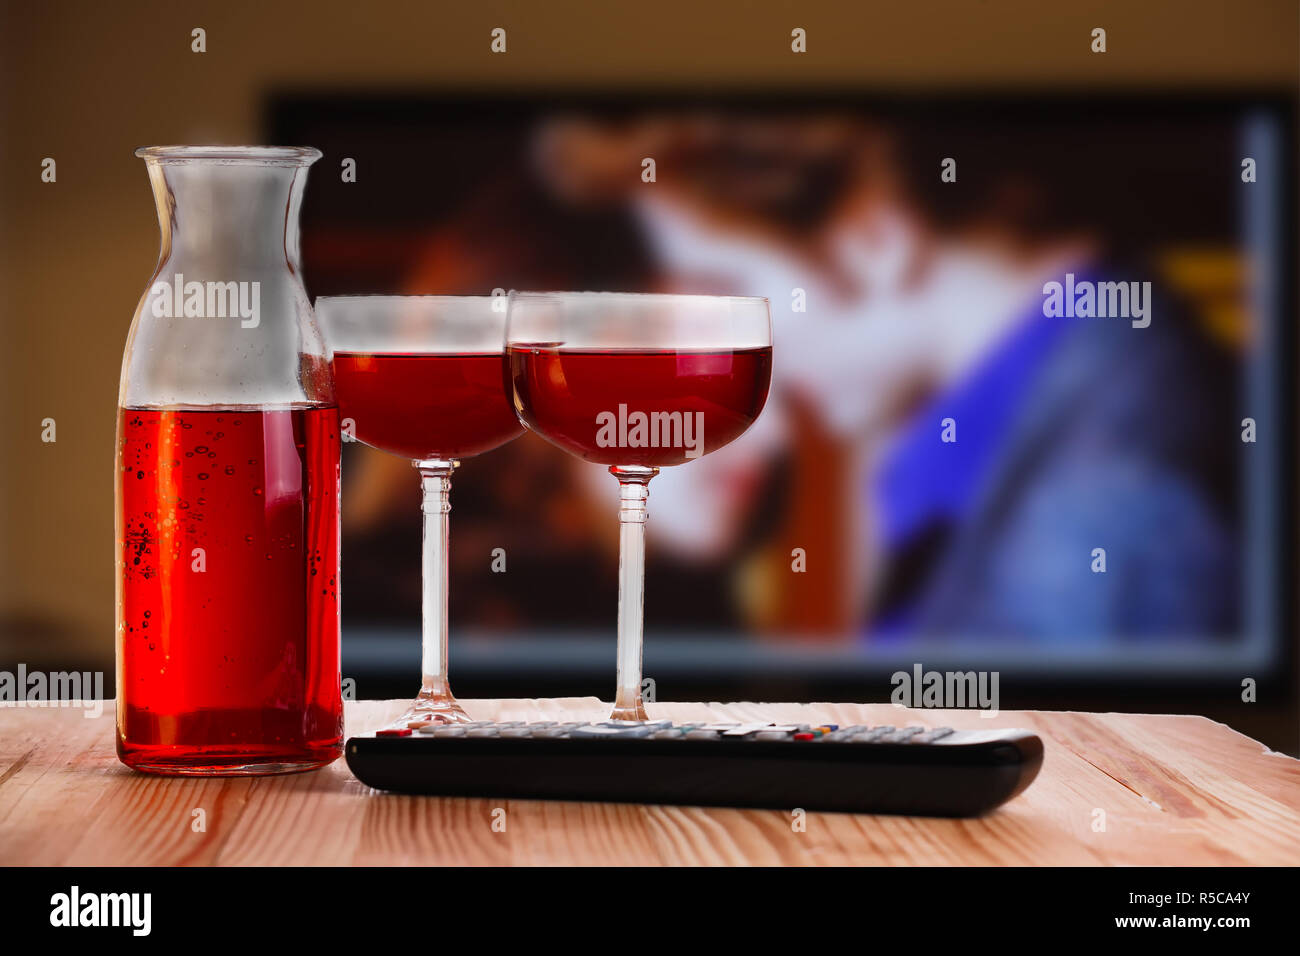 Zwei Glas und Karaffe Wein mit TV-Fernbedienung auf hellen, natürlichen hölzernen Tisch. Konzept der romantischen Film ansehen. Stockfoto